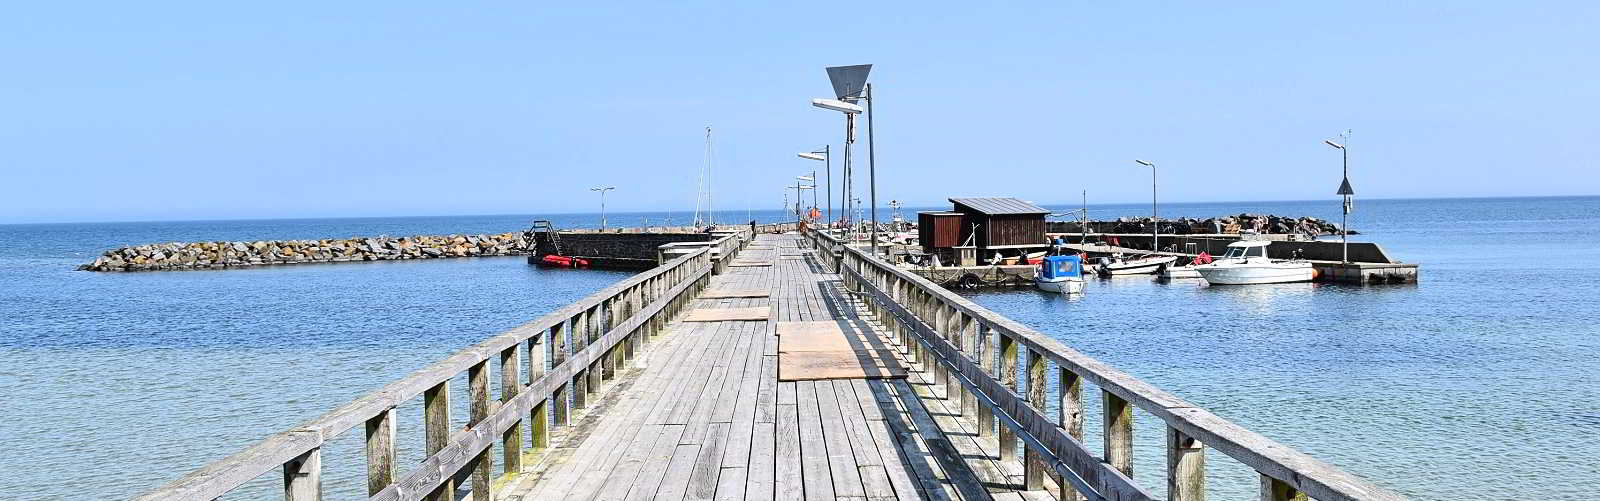 Snogebæk harbour